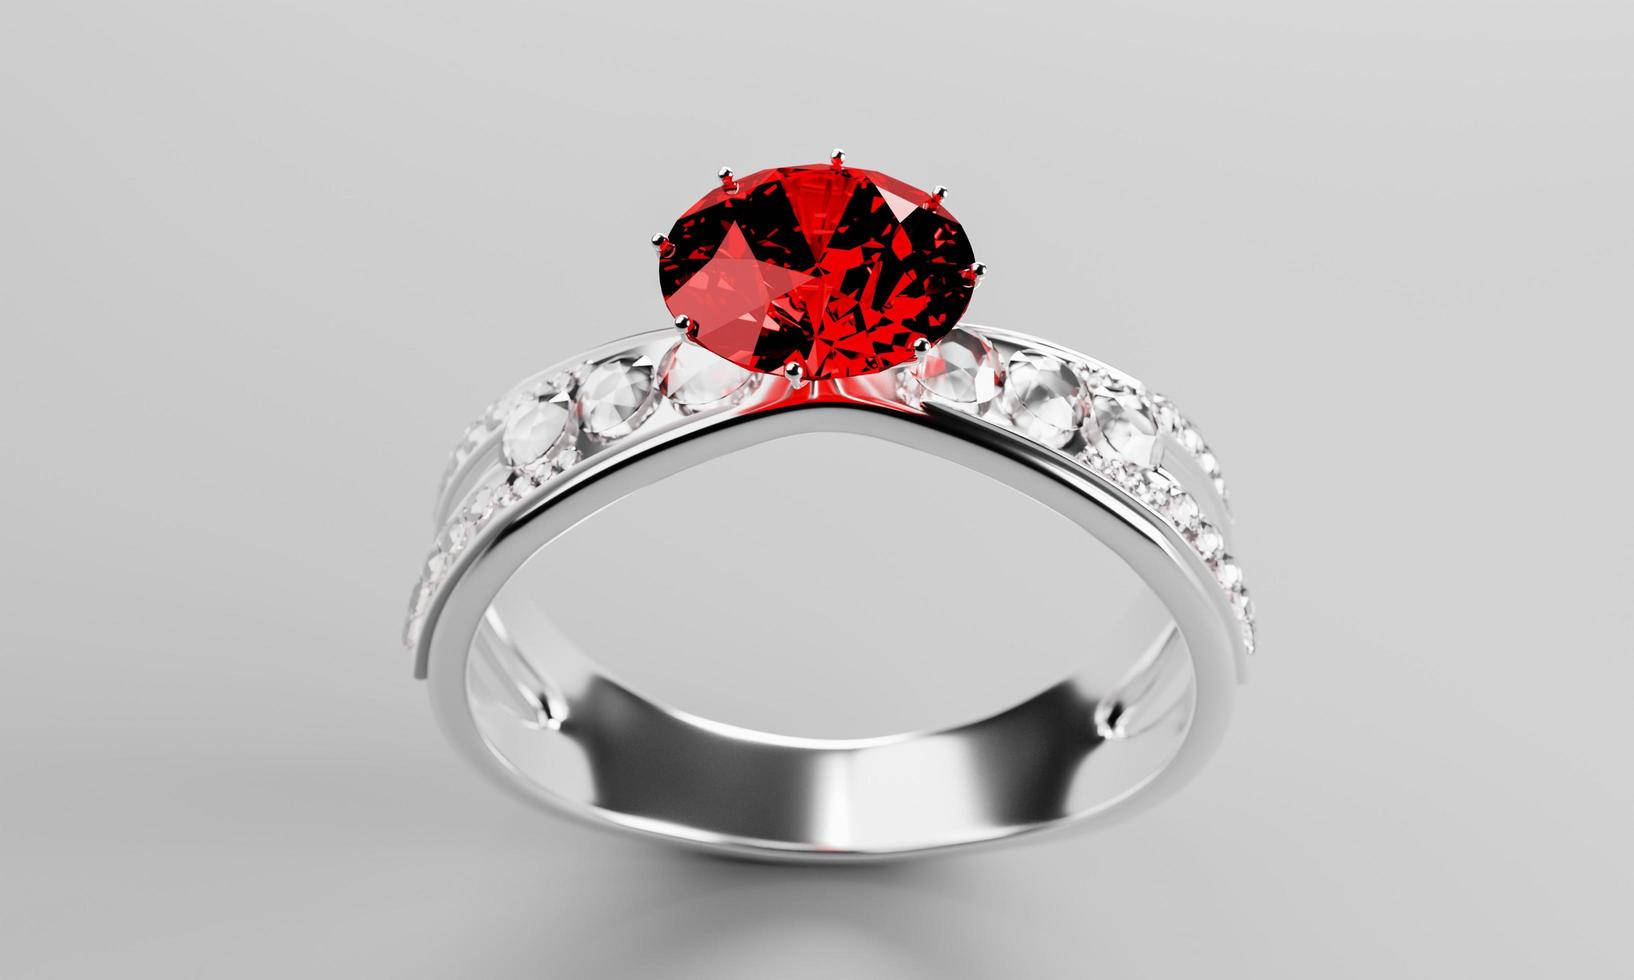 le gros diamant rouge ou rubis est entouré de nombreux diamants sur l'anneau en or platine posé sur fond gris. élégante bague de mariage en diamant pour femme. rendu 3d photo